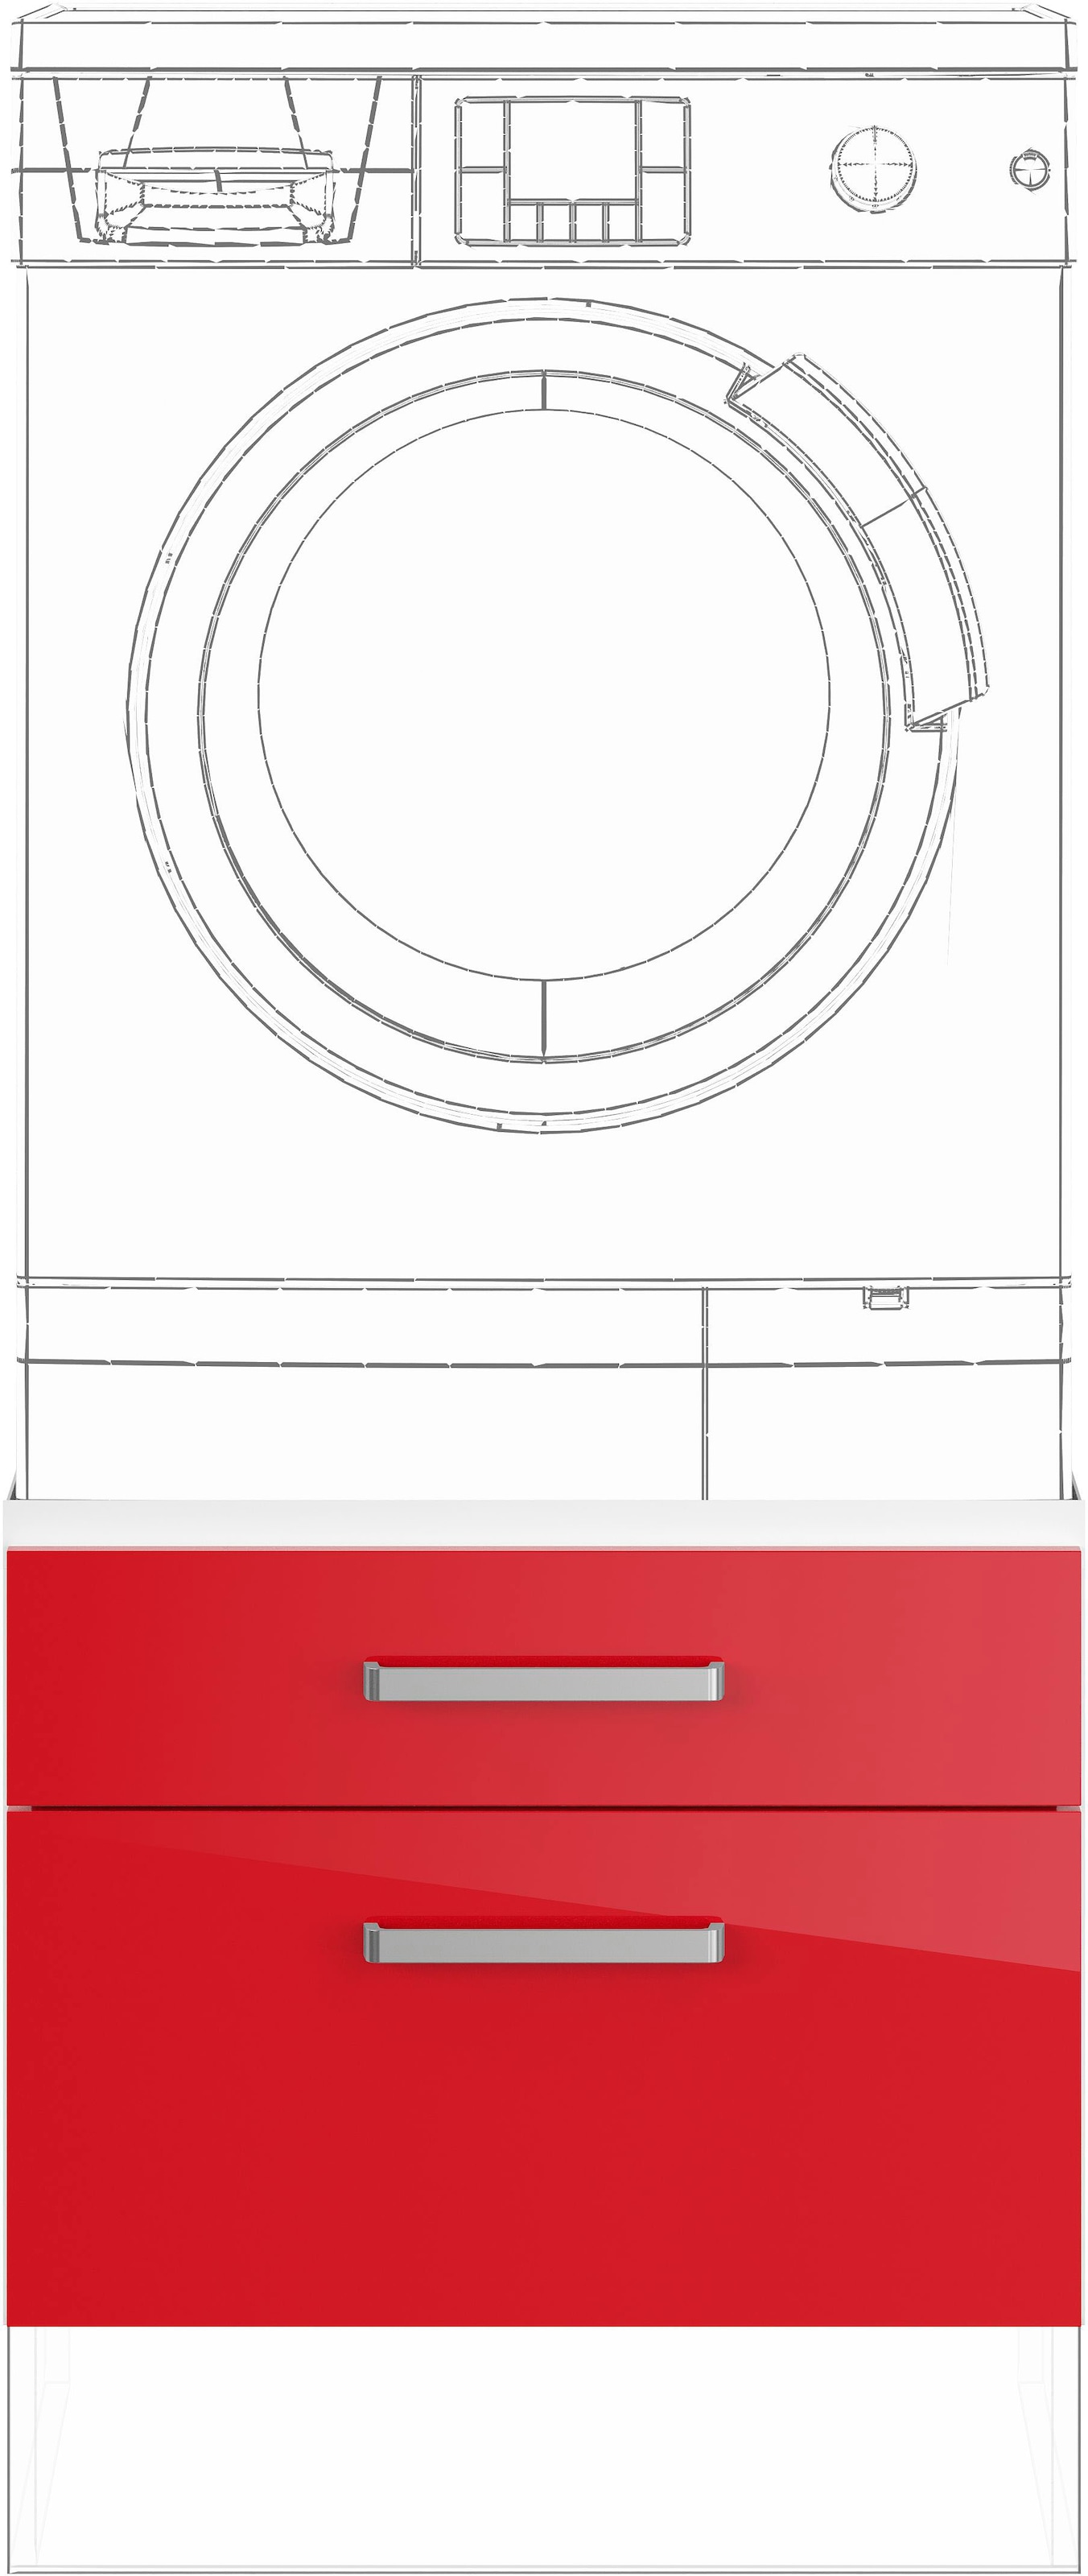 IMPULS KÜCHEN Waschmaschinenumbauschrank »"Turin", Breite 60 cm«